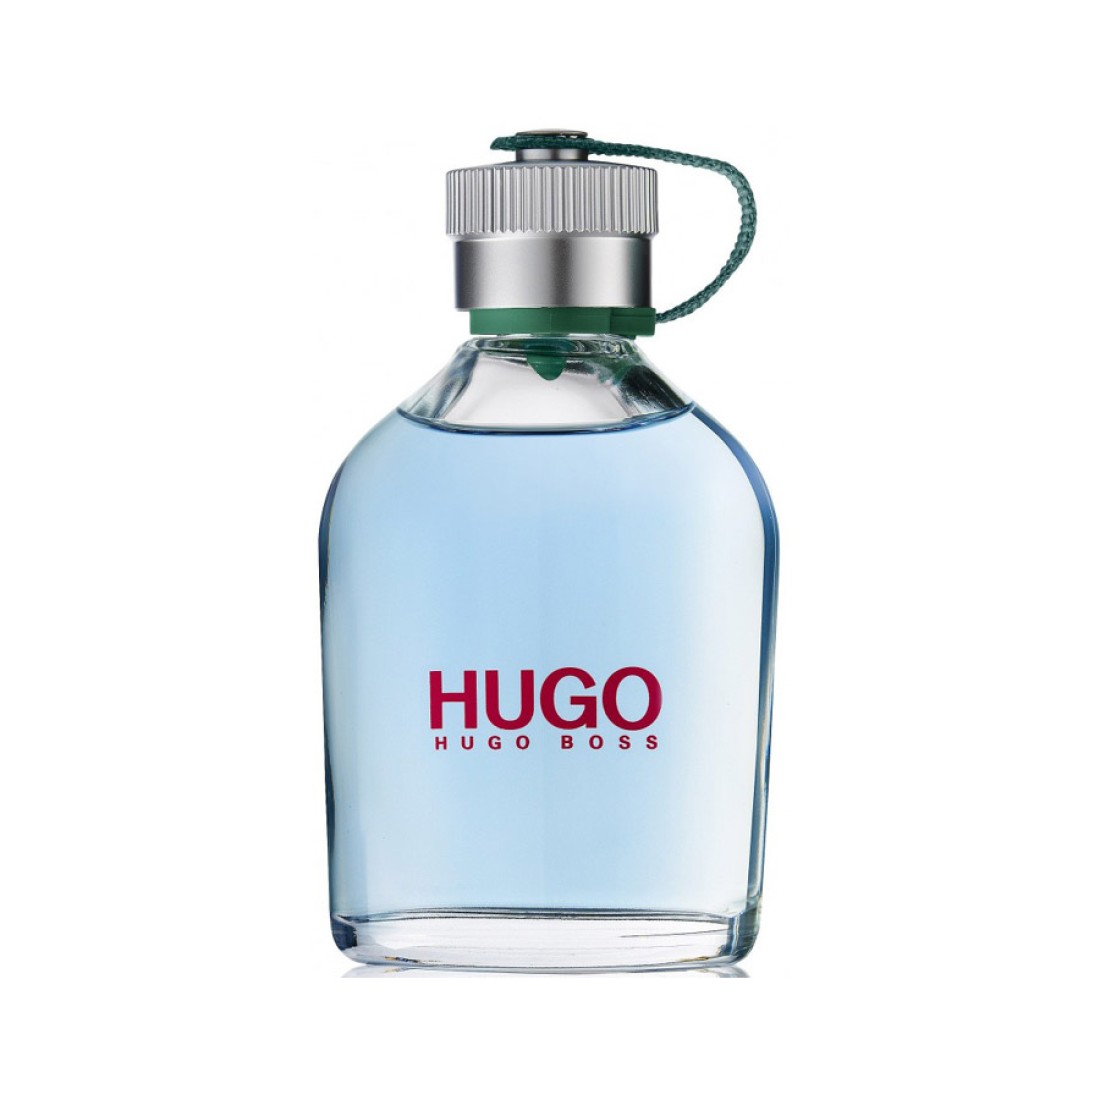 Hugo купить в москве. Хьюго босс. Хьюго босс Хьюго мен. Парфюм Hugo man Hugo Boss. Hugo Boss Classic.